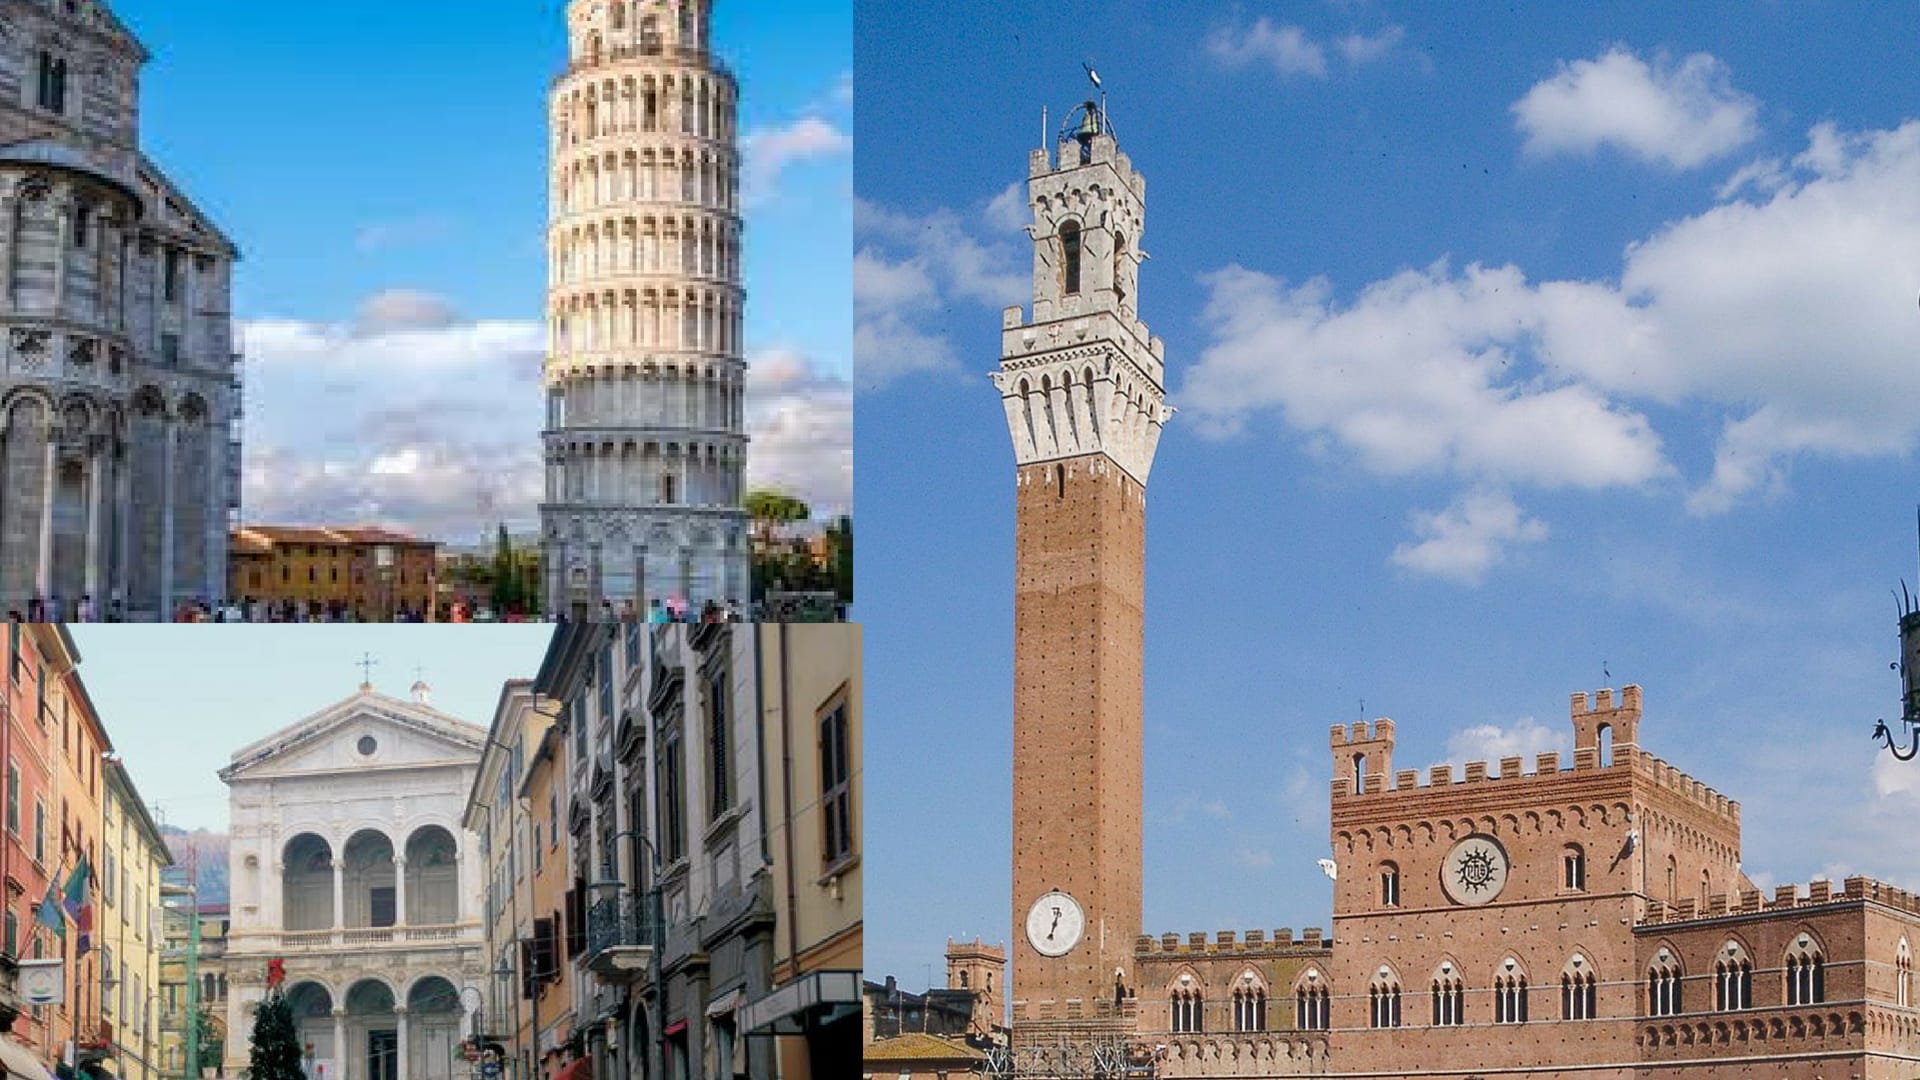 Ballottaggi in Toscana: Pisa, Siena e Massa al centrodestra